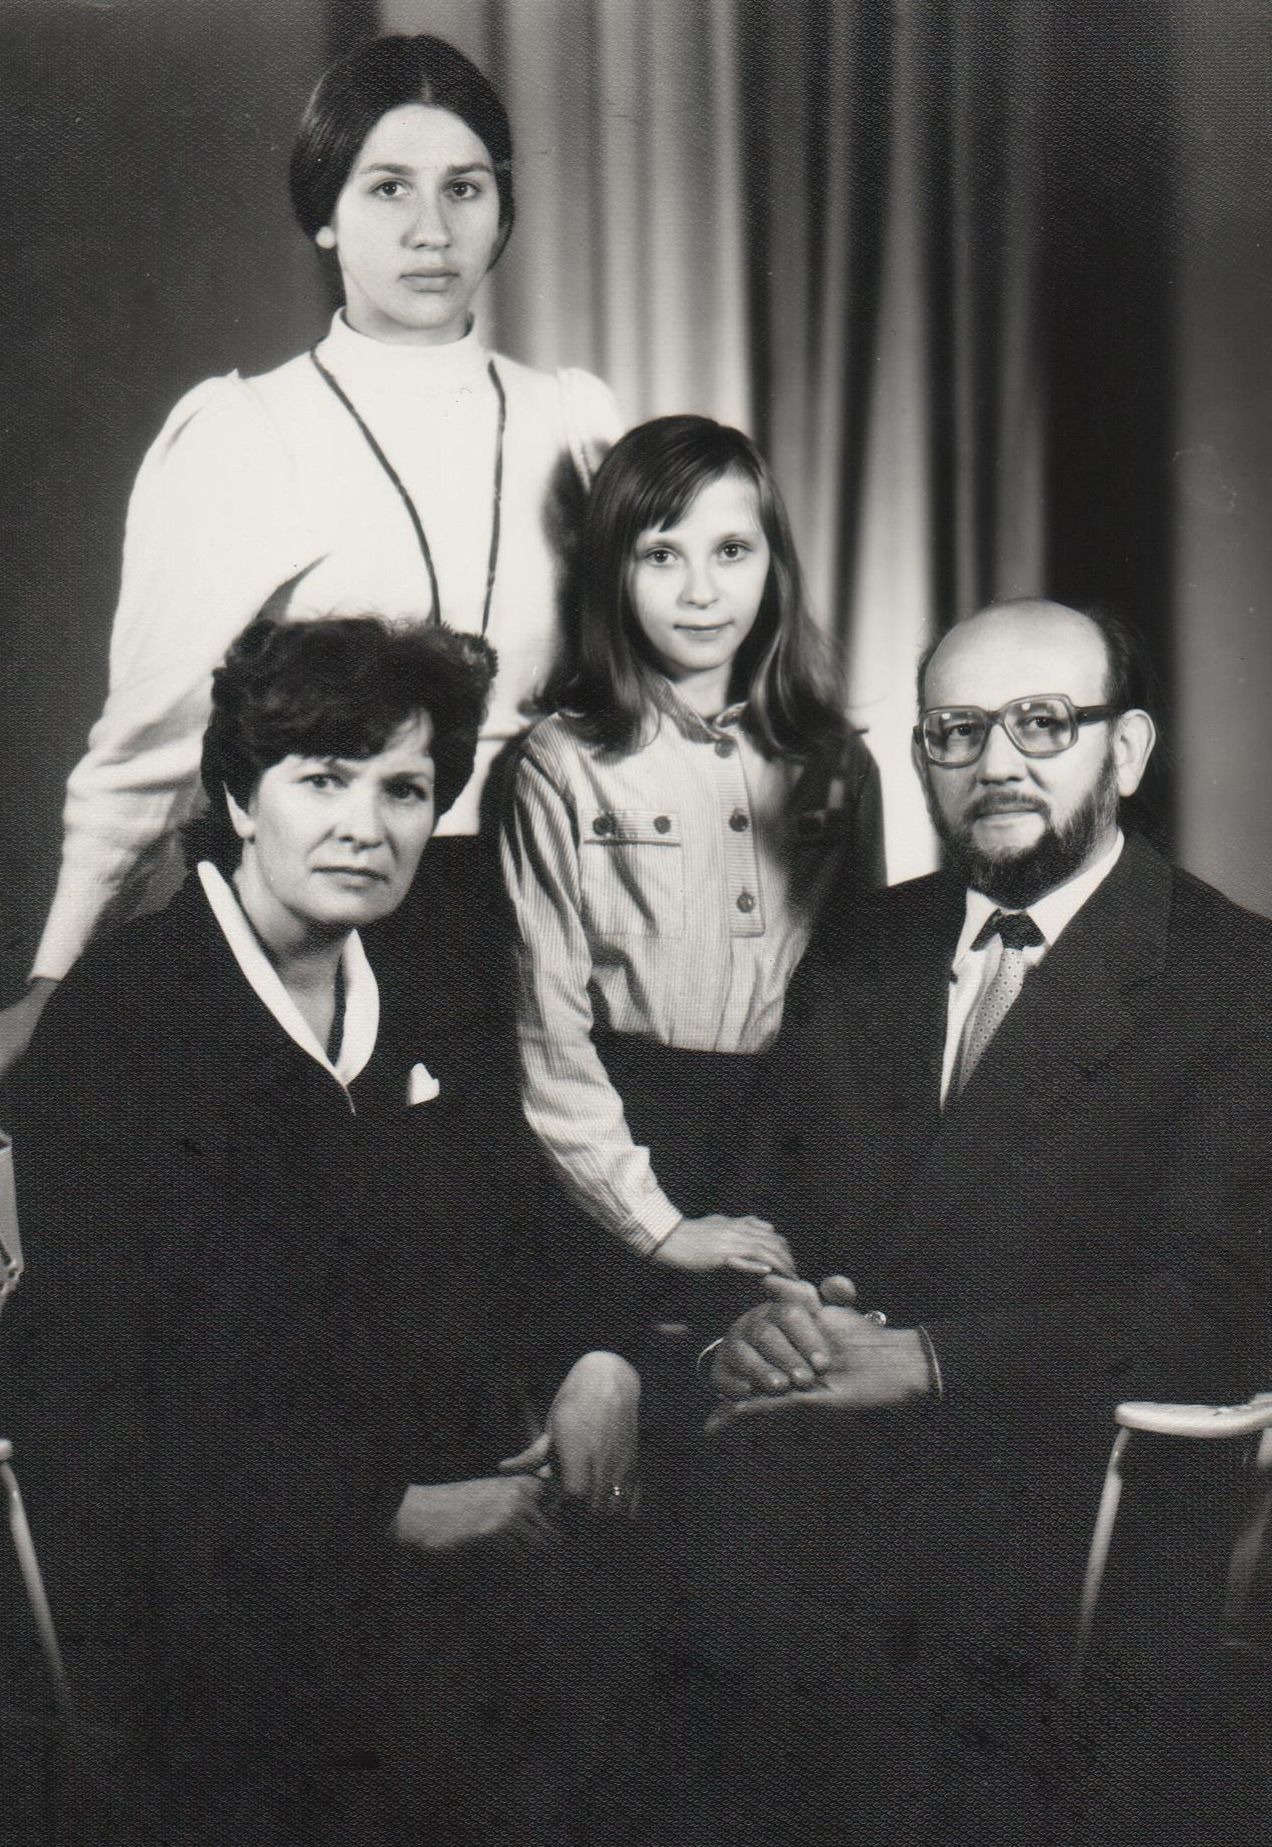 Gedimino ir Birutės Ilgūnų šeima, pradėjusi 3-čią bendro gyvenimo dešimtmetį. 1986 m. rugpjūčio 30 d.